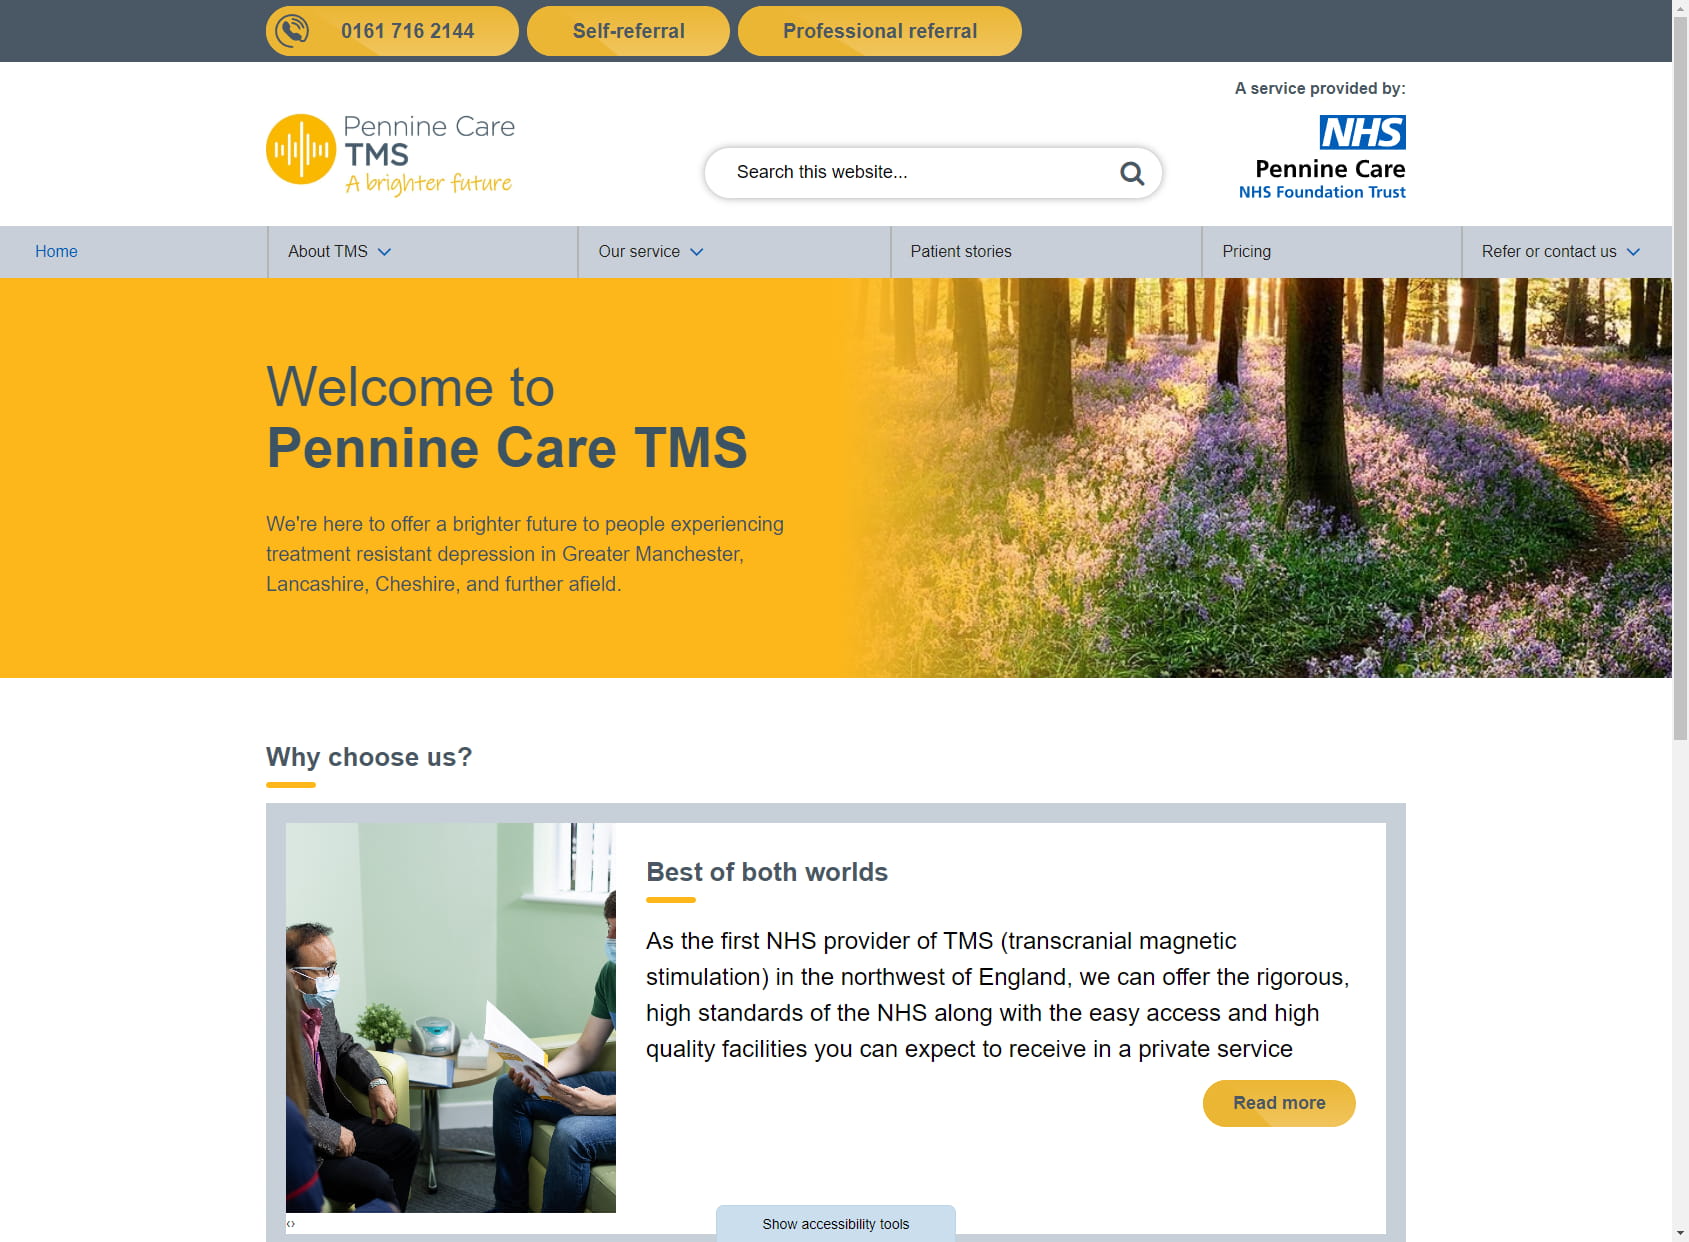 Pennine Care TMS service